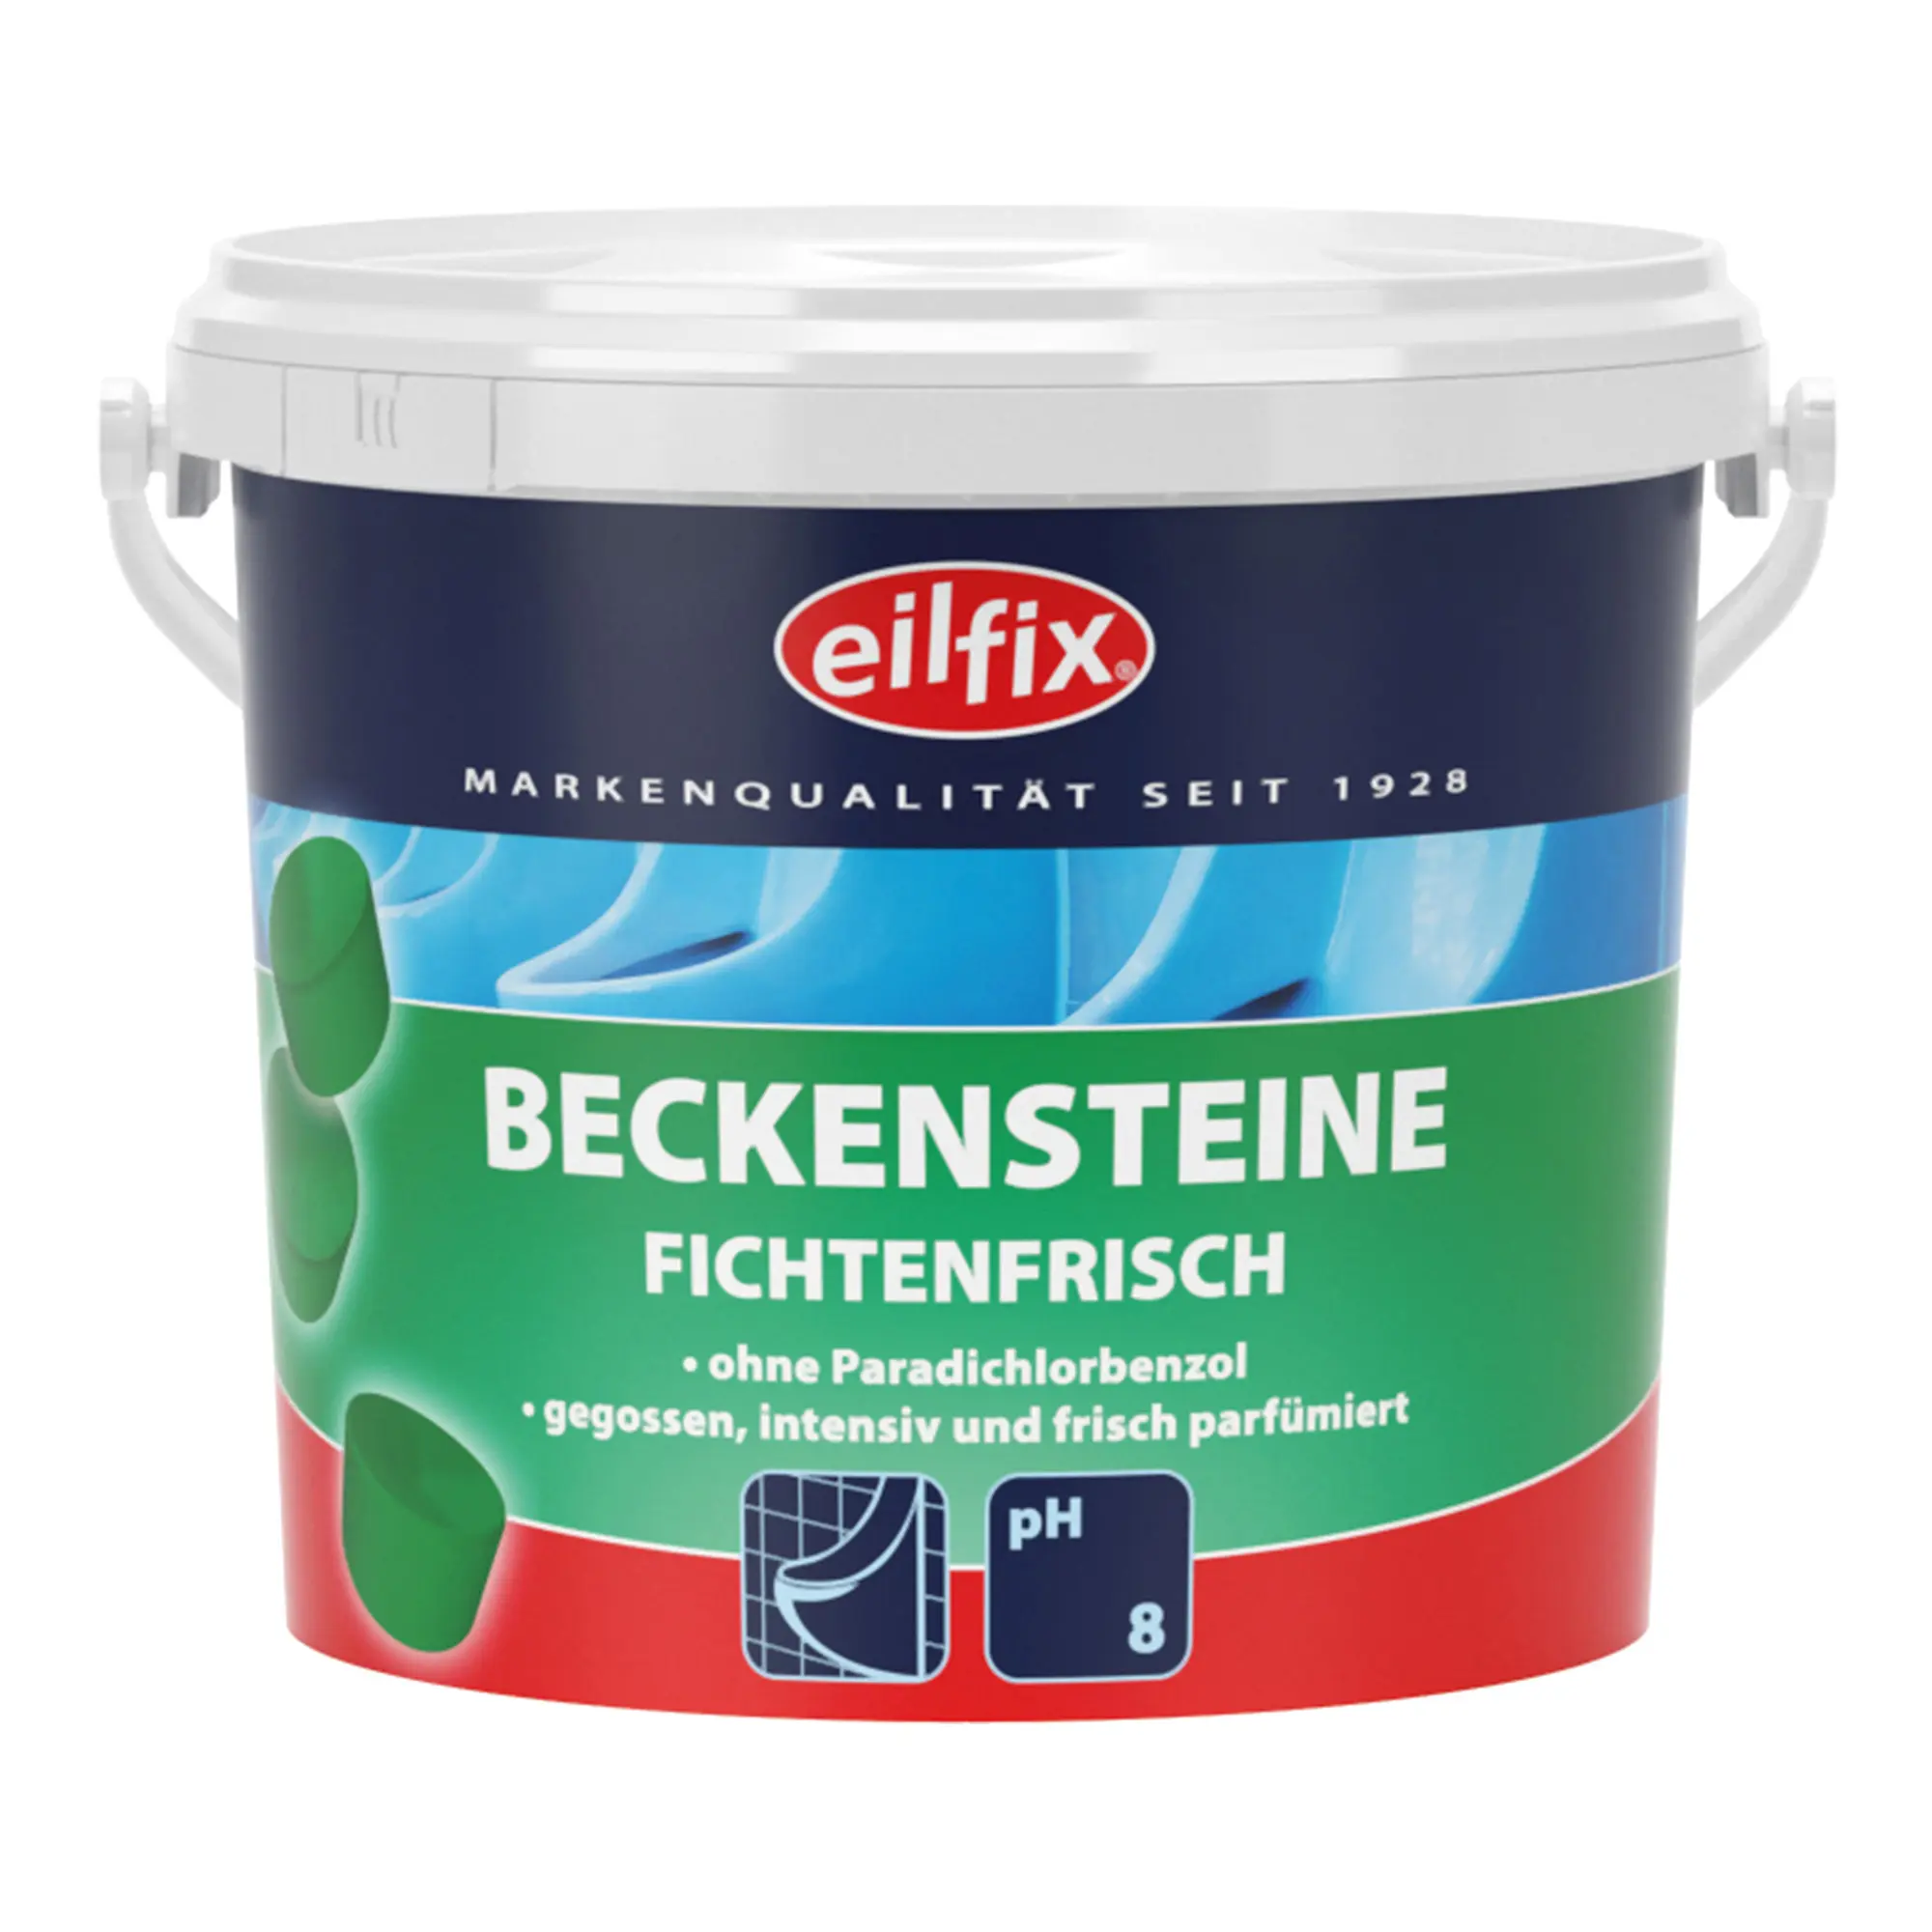 Eilfix Bio-Beckensteine Fichte 2 kg Eimer 100128-002-000_1